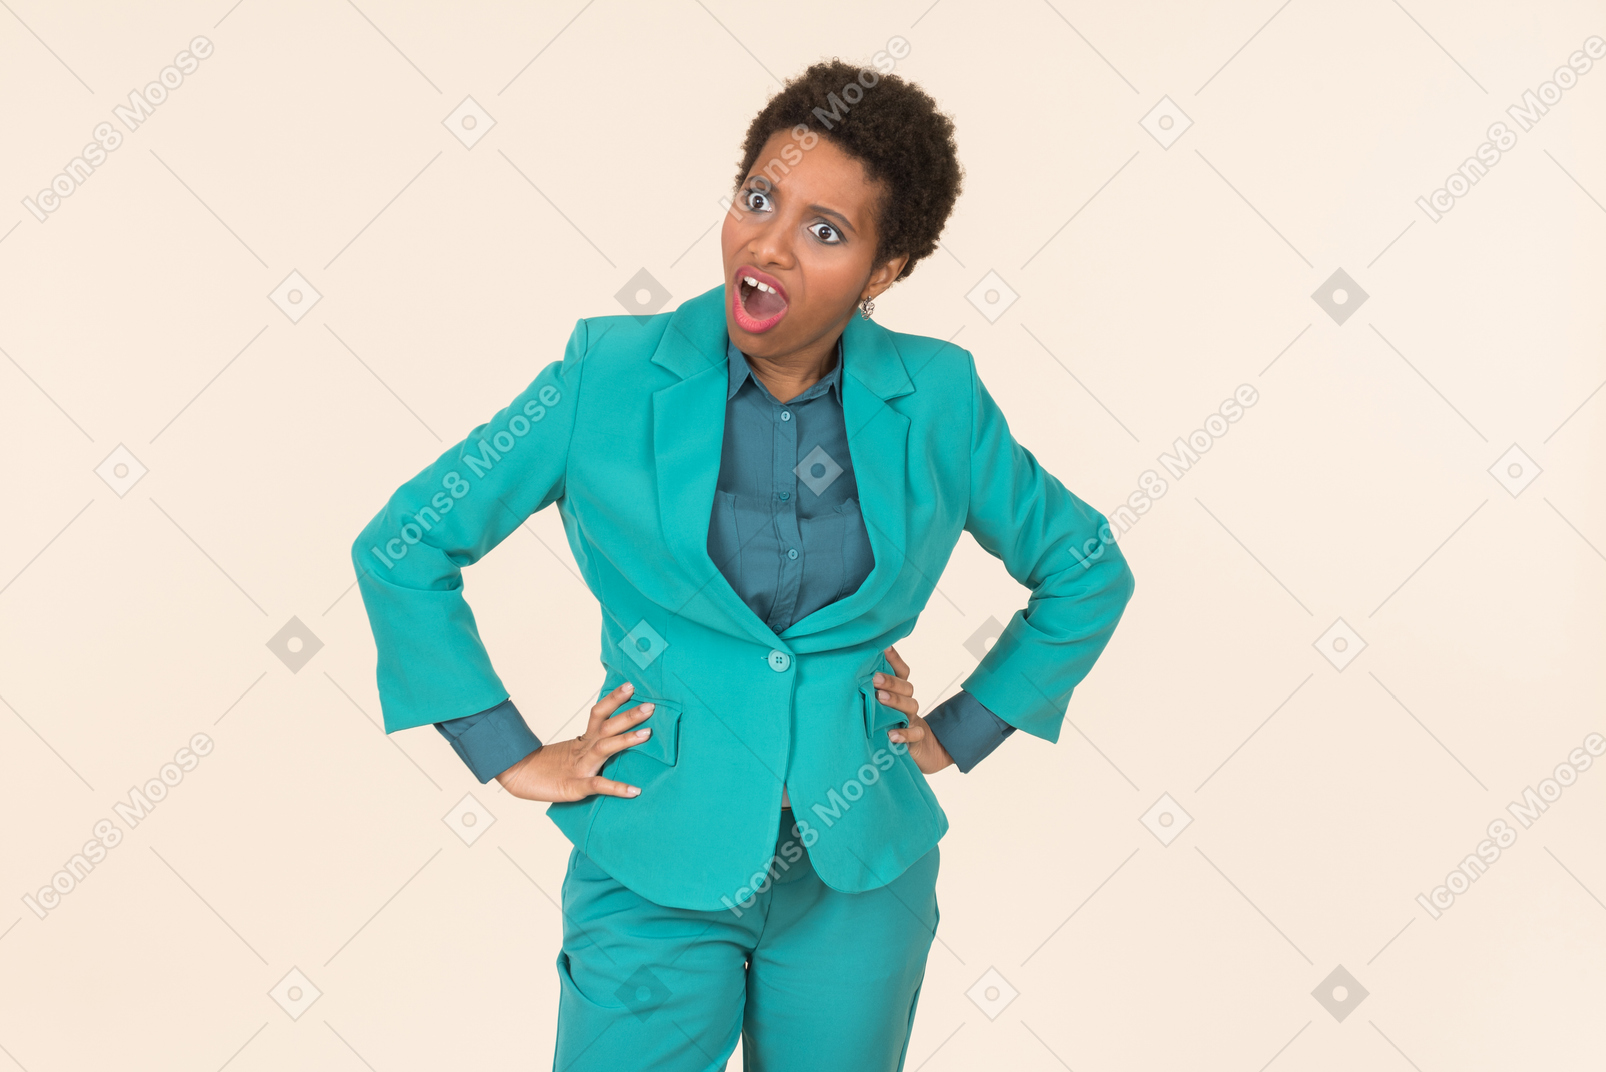 Mulher negra com um corte de cabelo curto, vestindo todo o azul, de pé contra um fundo pastel liso, olhando emocional